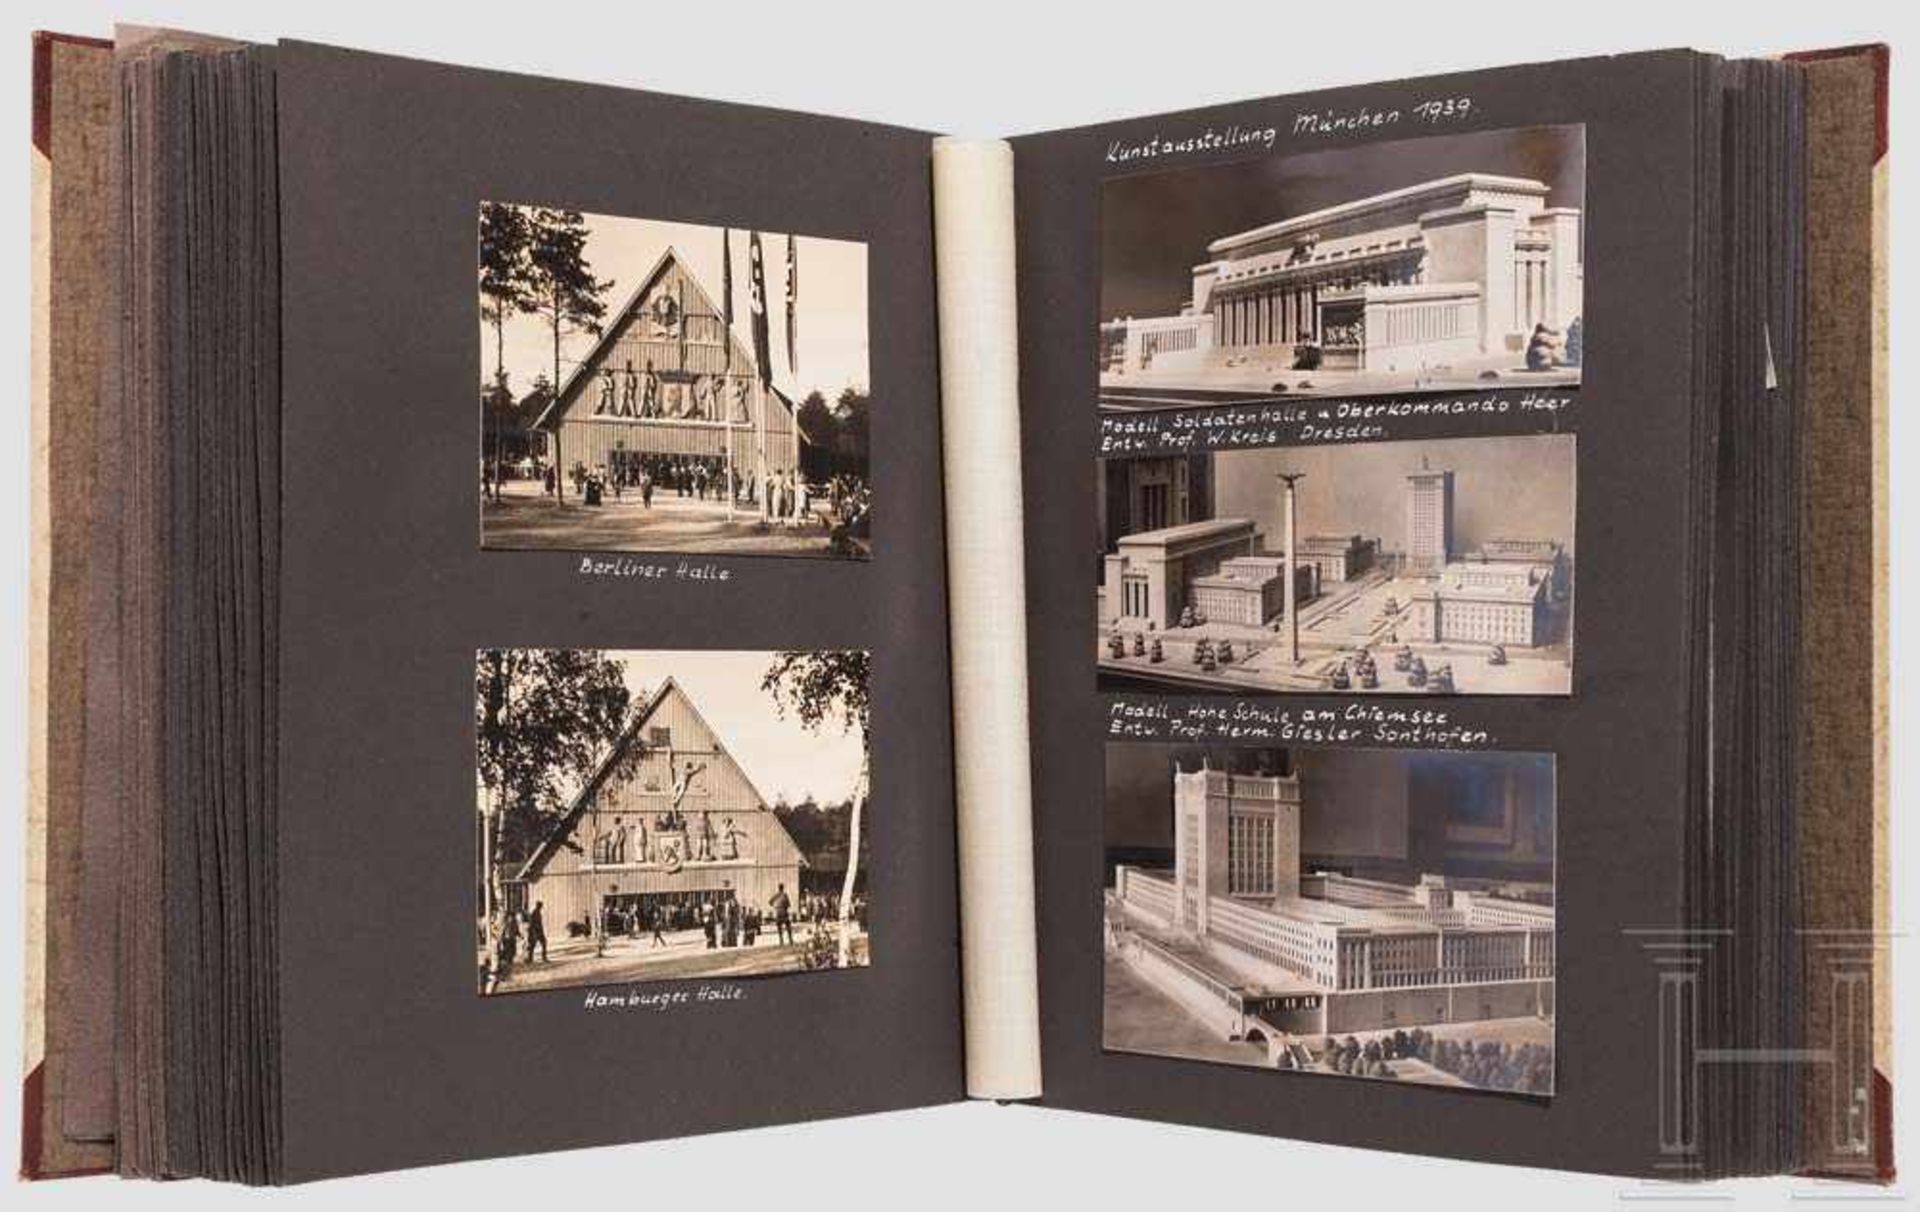 Fotoalbum des Architekten Adolf Emilius, Nürnberg 30er, 40er und 50er Jahre, Architekturaufnahmen